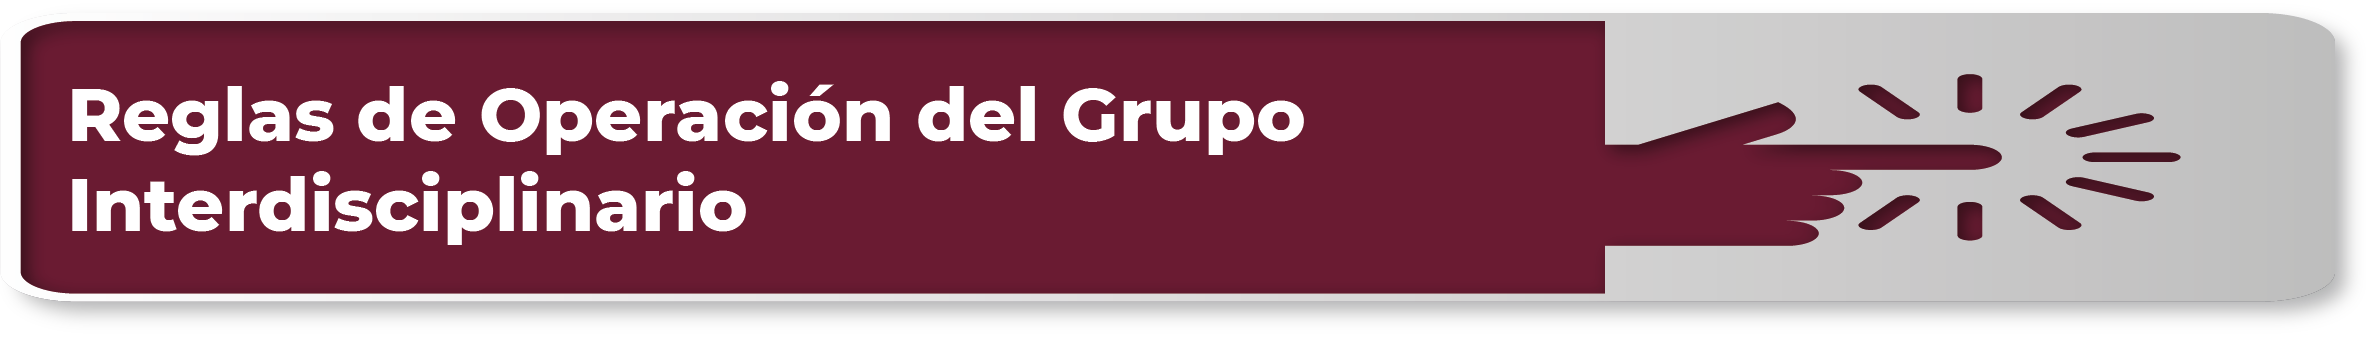 /cms/uploads/image/file/777631/Reglas_de_Operaci_n_del_Grupo_Interdisciplinario_Mesa_de_trabajo_1.png